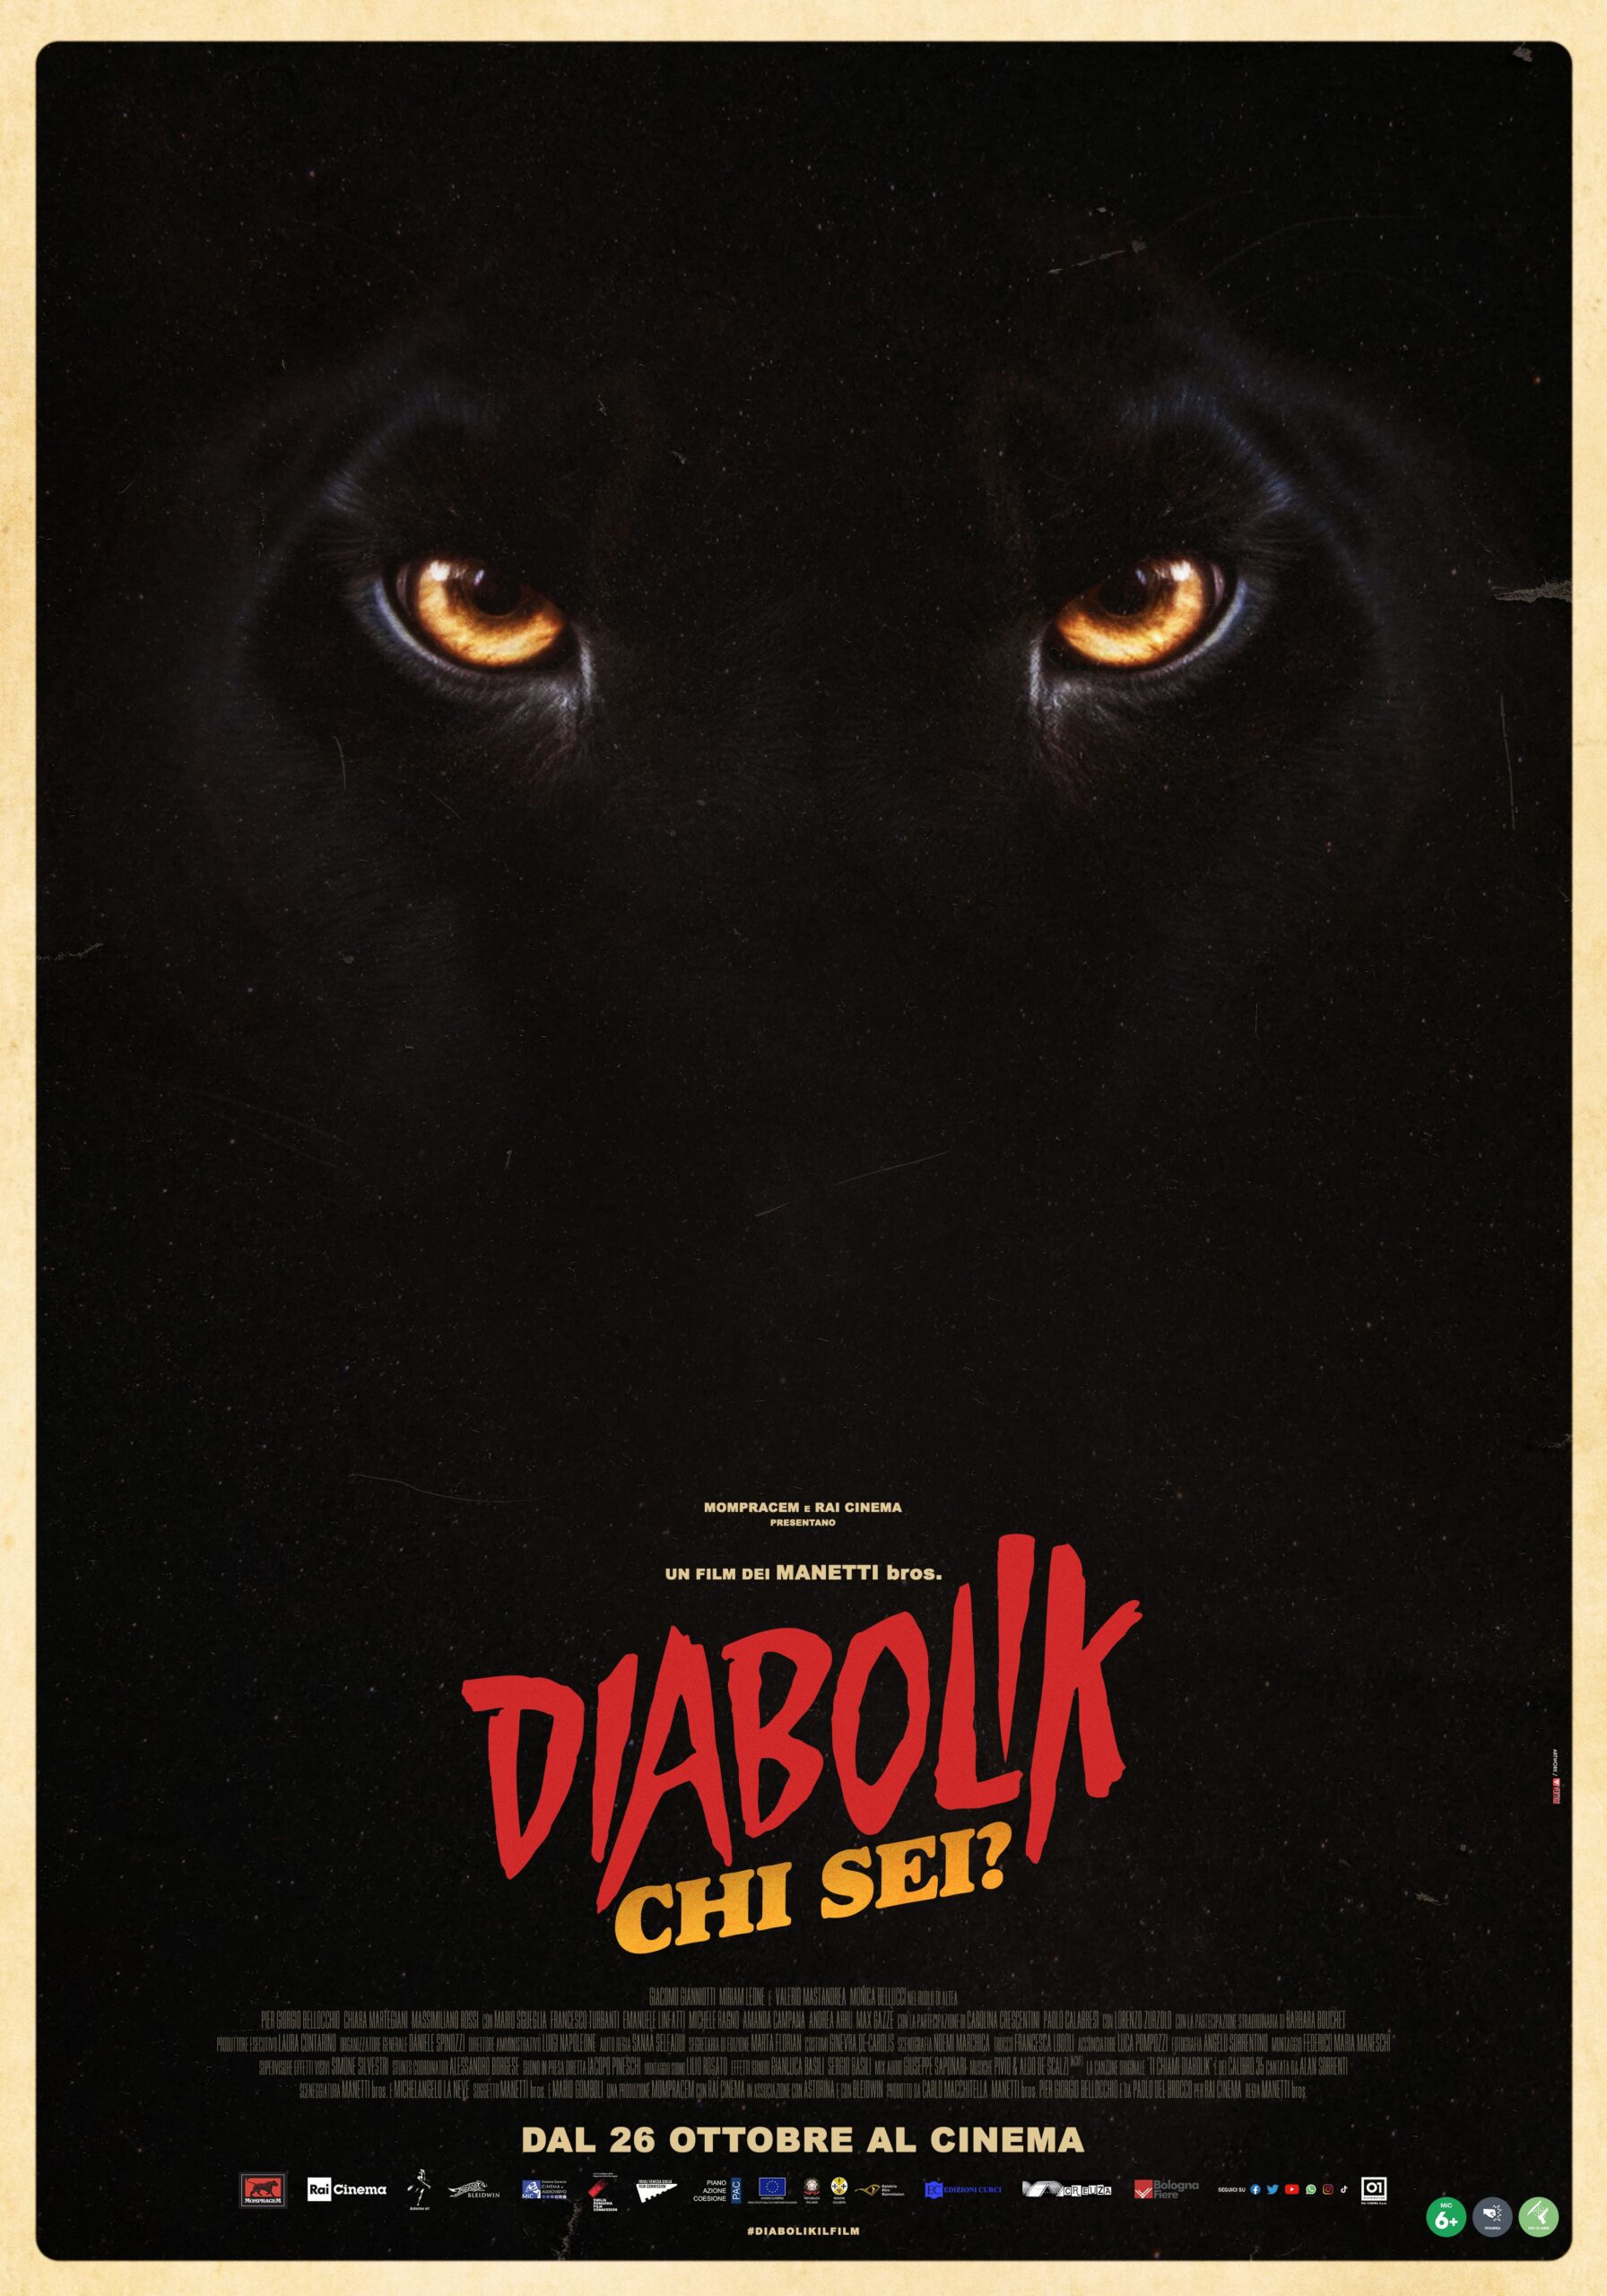 "Diabolik - Chi sei?" dei Manetti bros., rilasciato il Teaser Poster e fissata la data d'uscita nelle sale